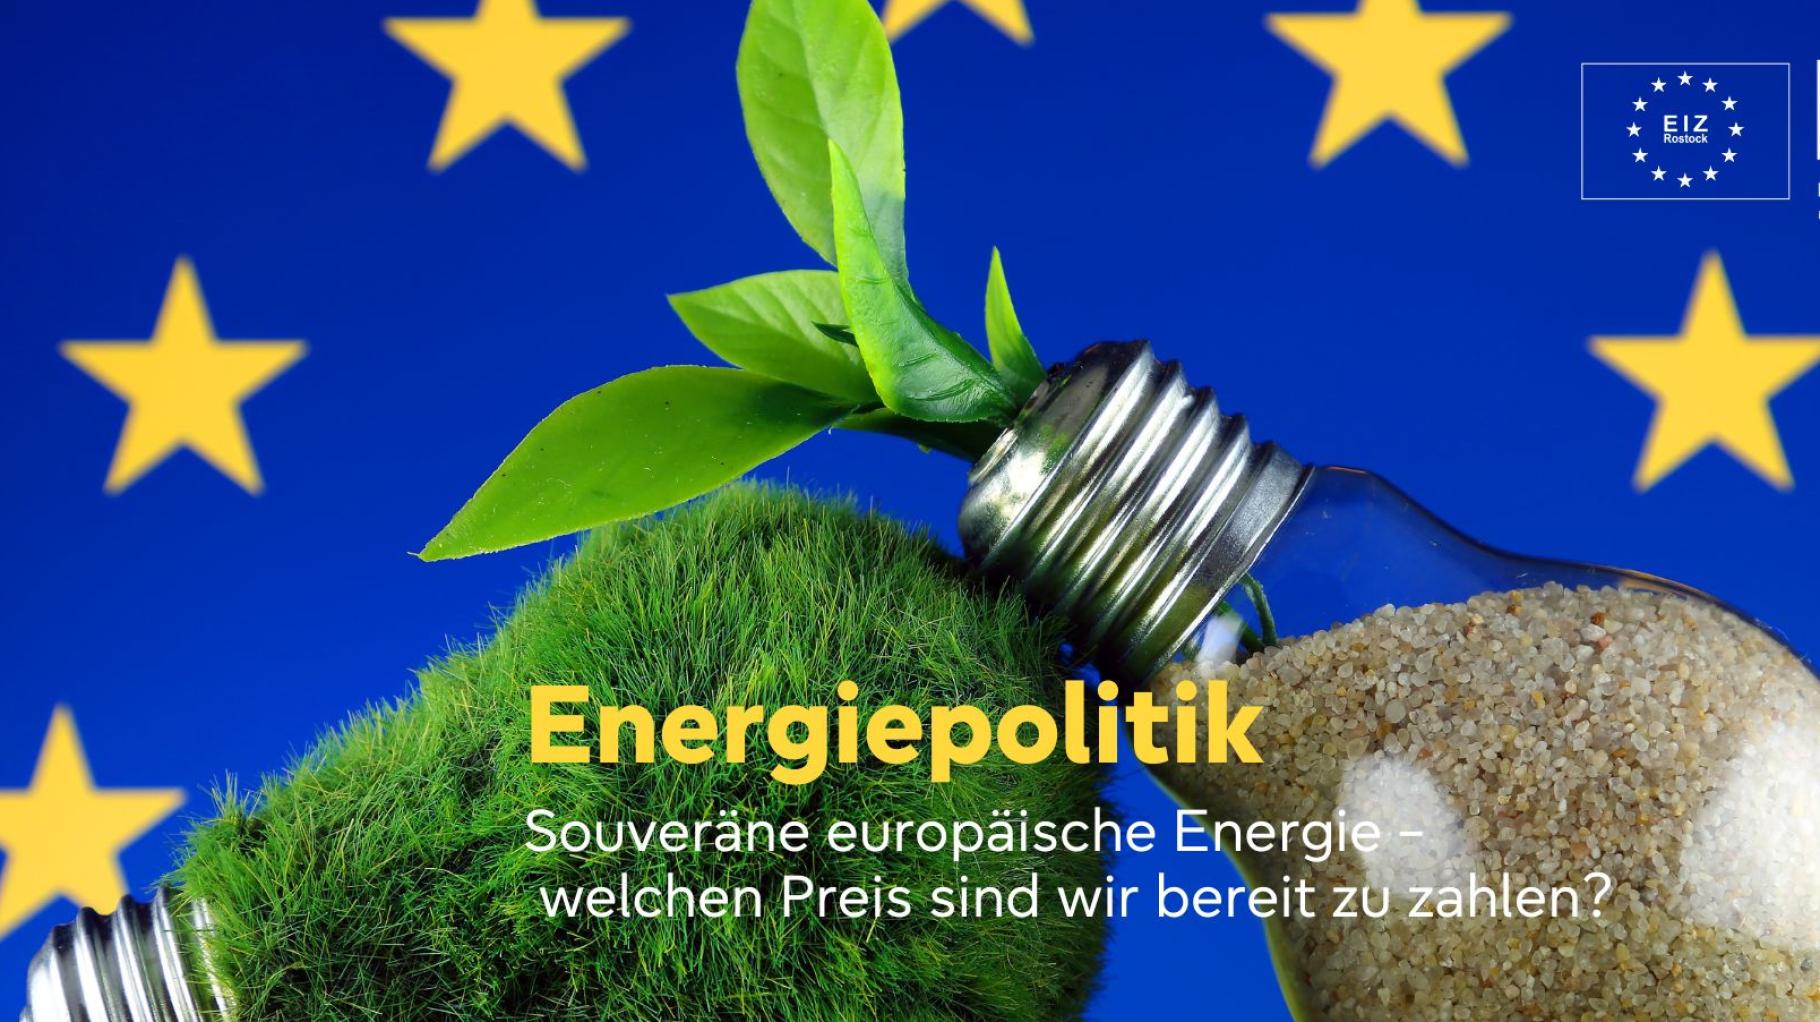 Souveräne europäische Energie – Welchen Preis sind wir bereit zu zahlen? 